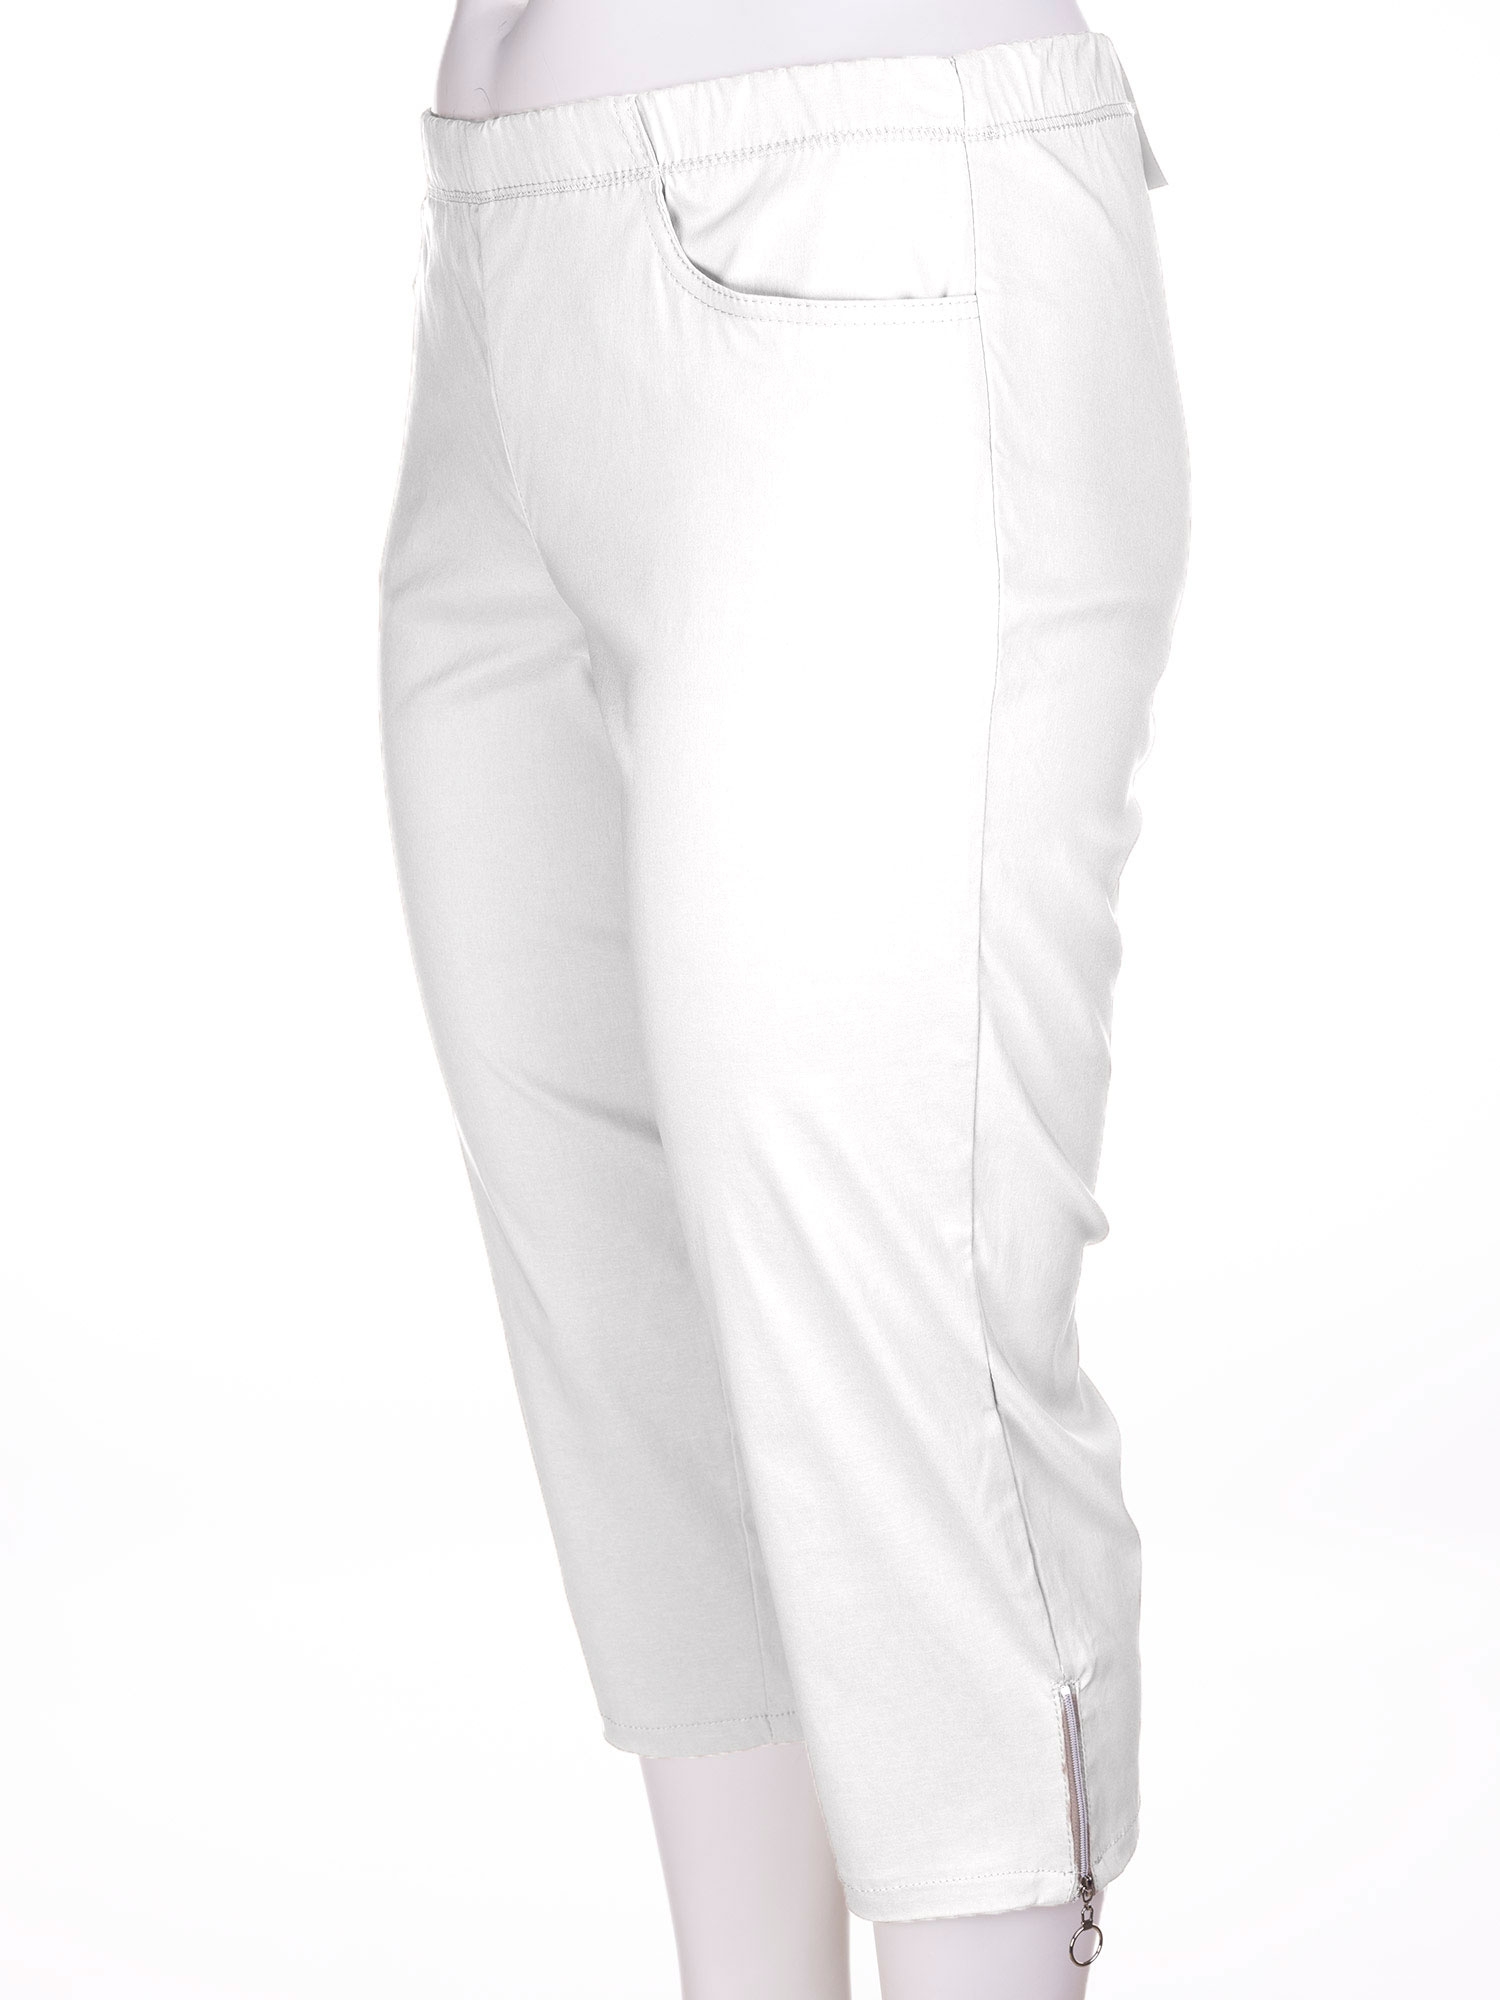 JAZZY - Hvite capri bukser med glidelås detalje fra Zhenzi